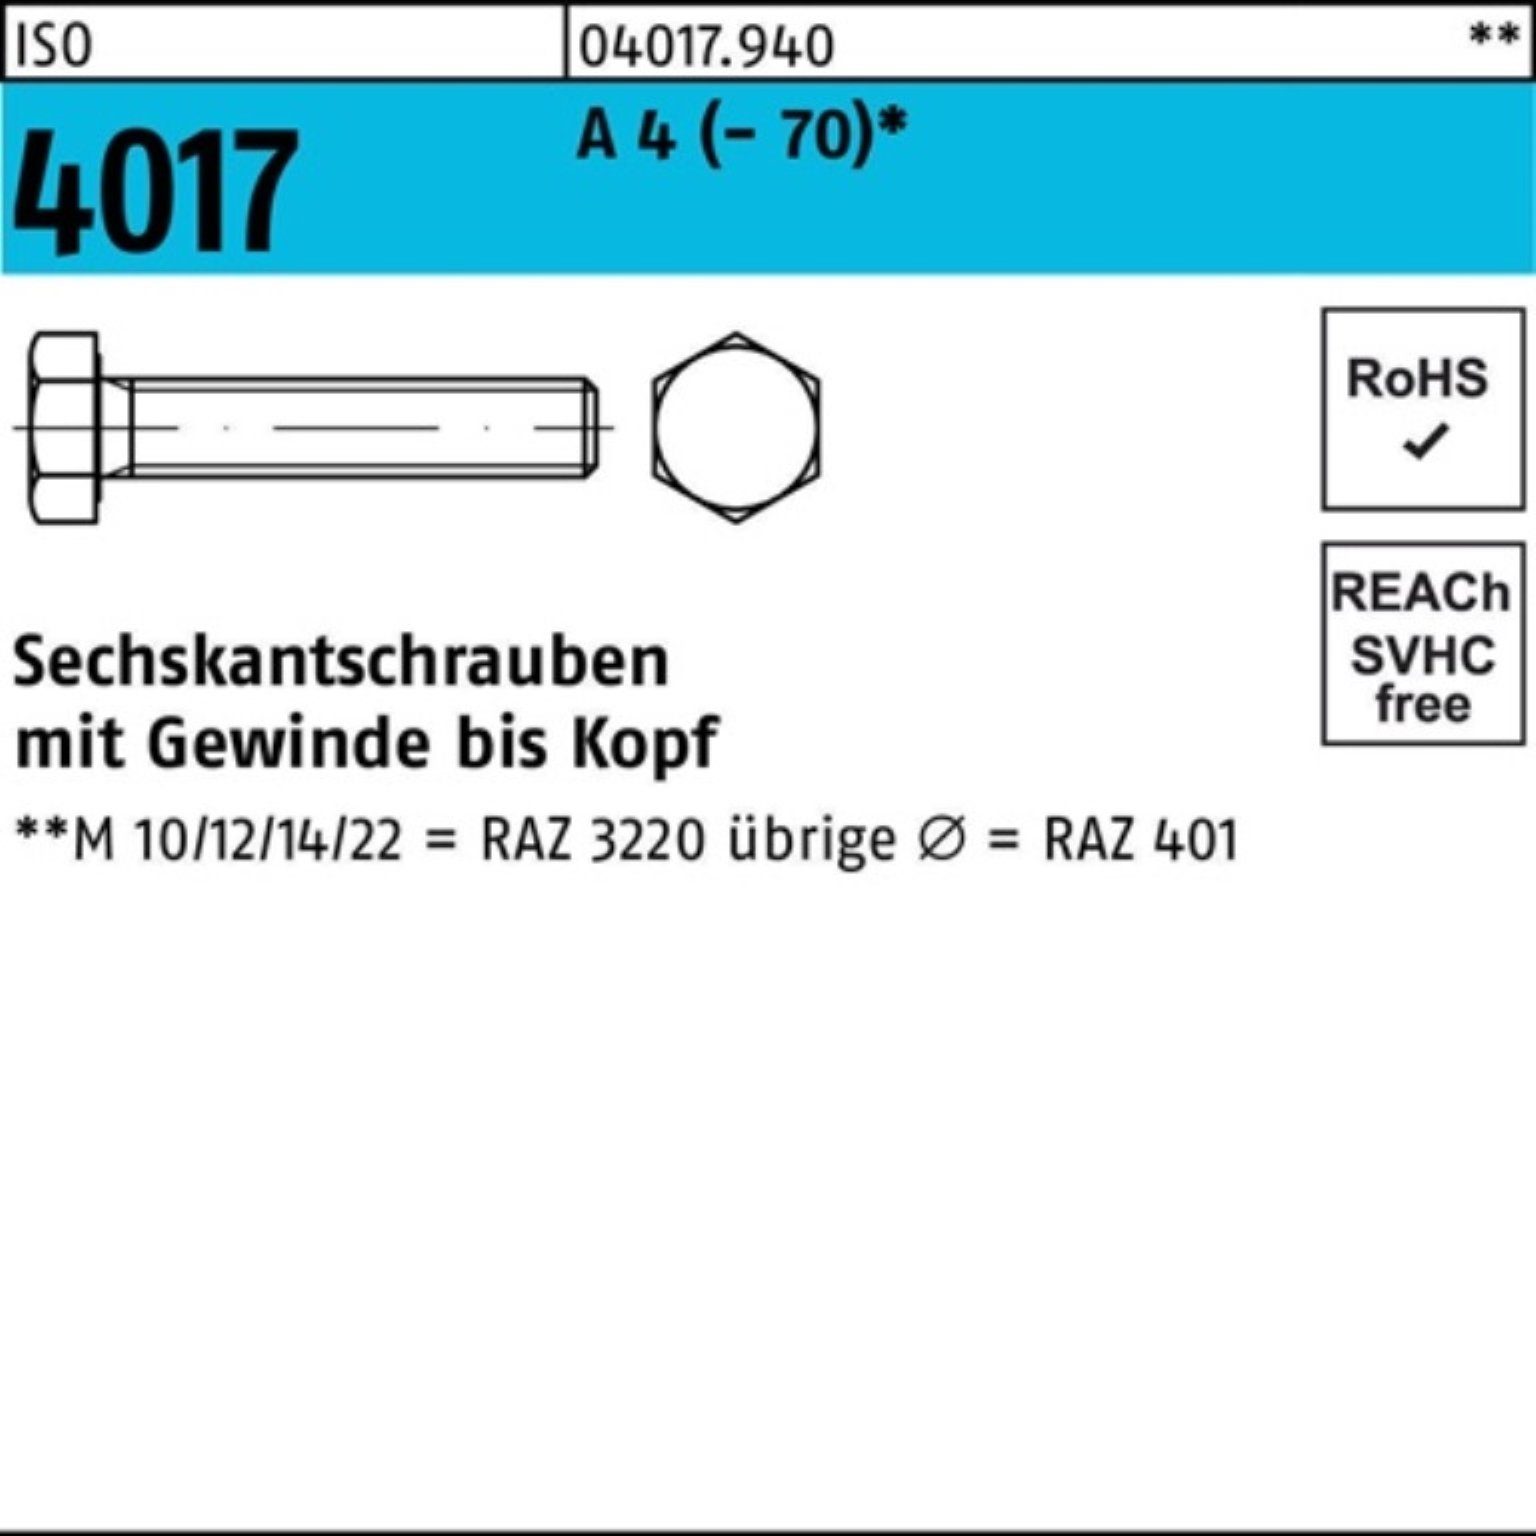 Bufab Sechskantschraube 500er Pack Sechskantschraube ISO 4017 VG M5x 20 A 4 (70) 500 Stück